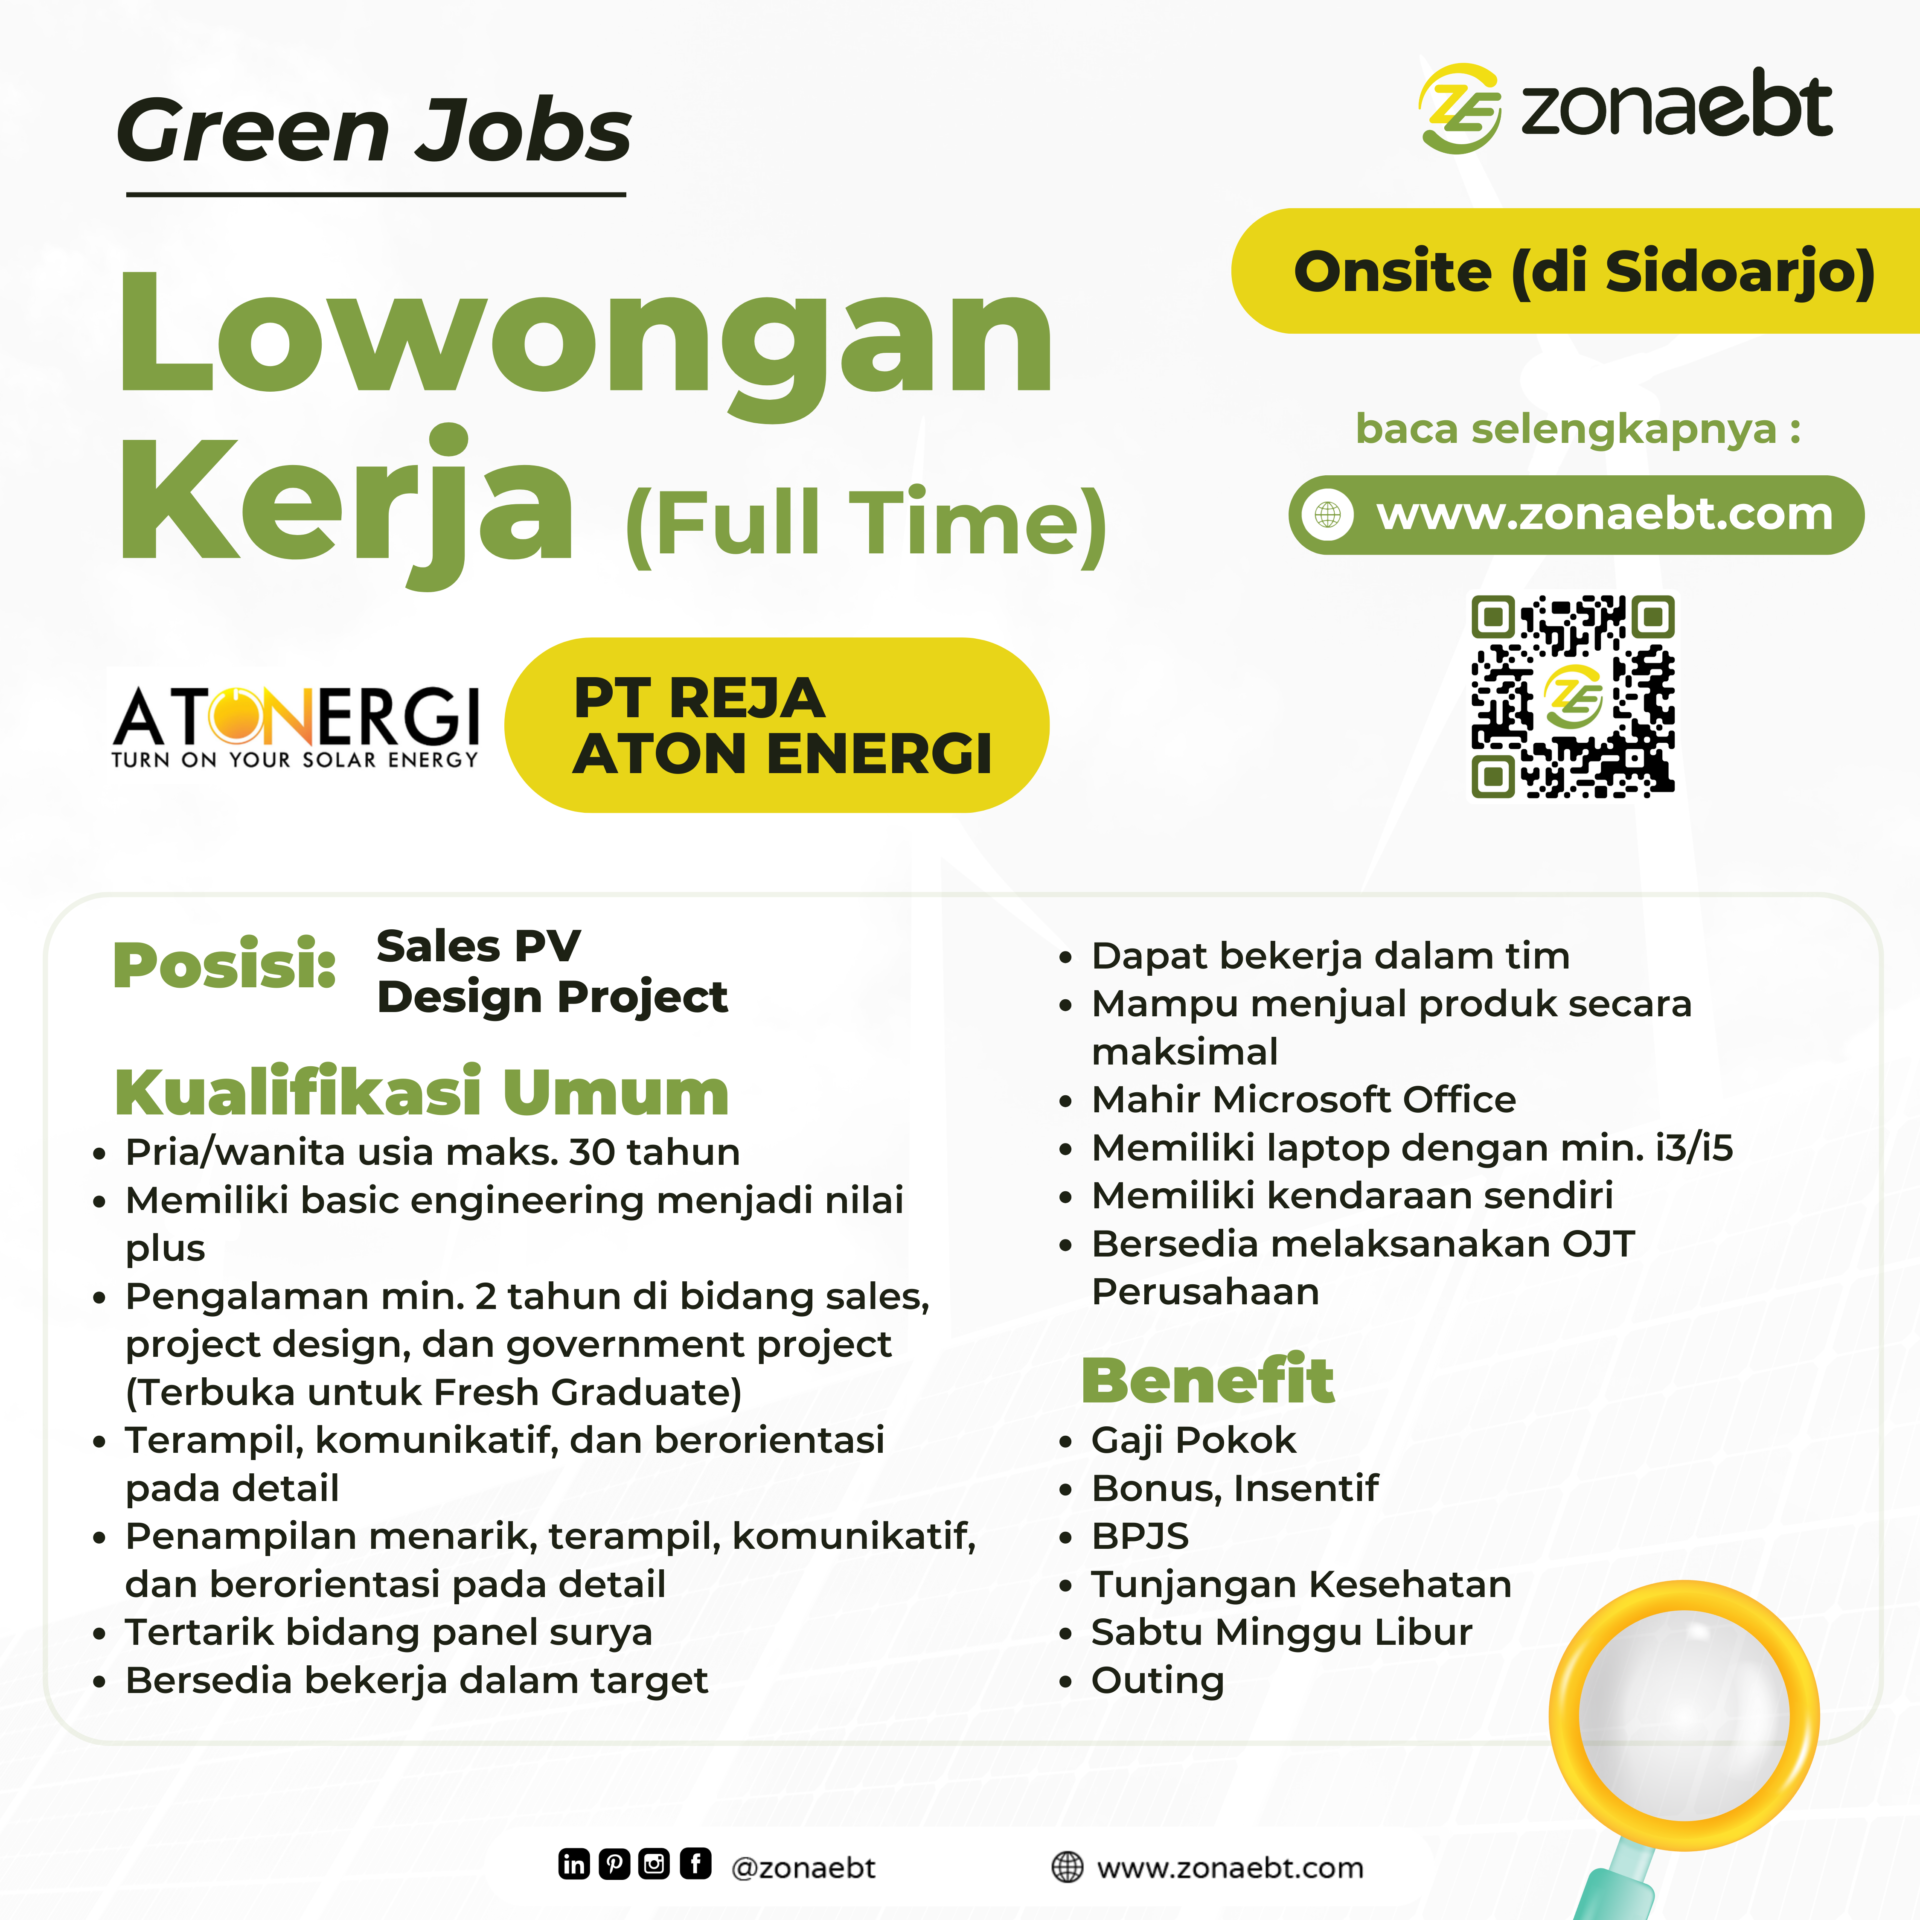 Post Sales PV Design Project green jobs zonaebt.com